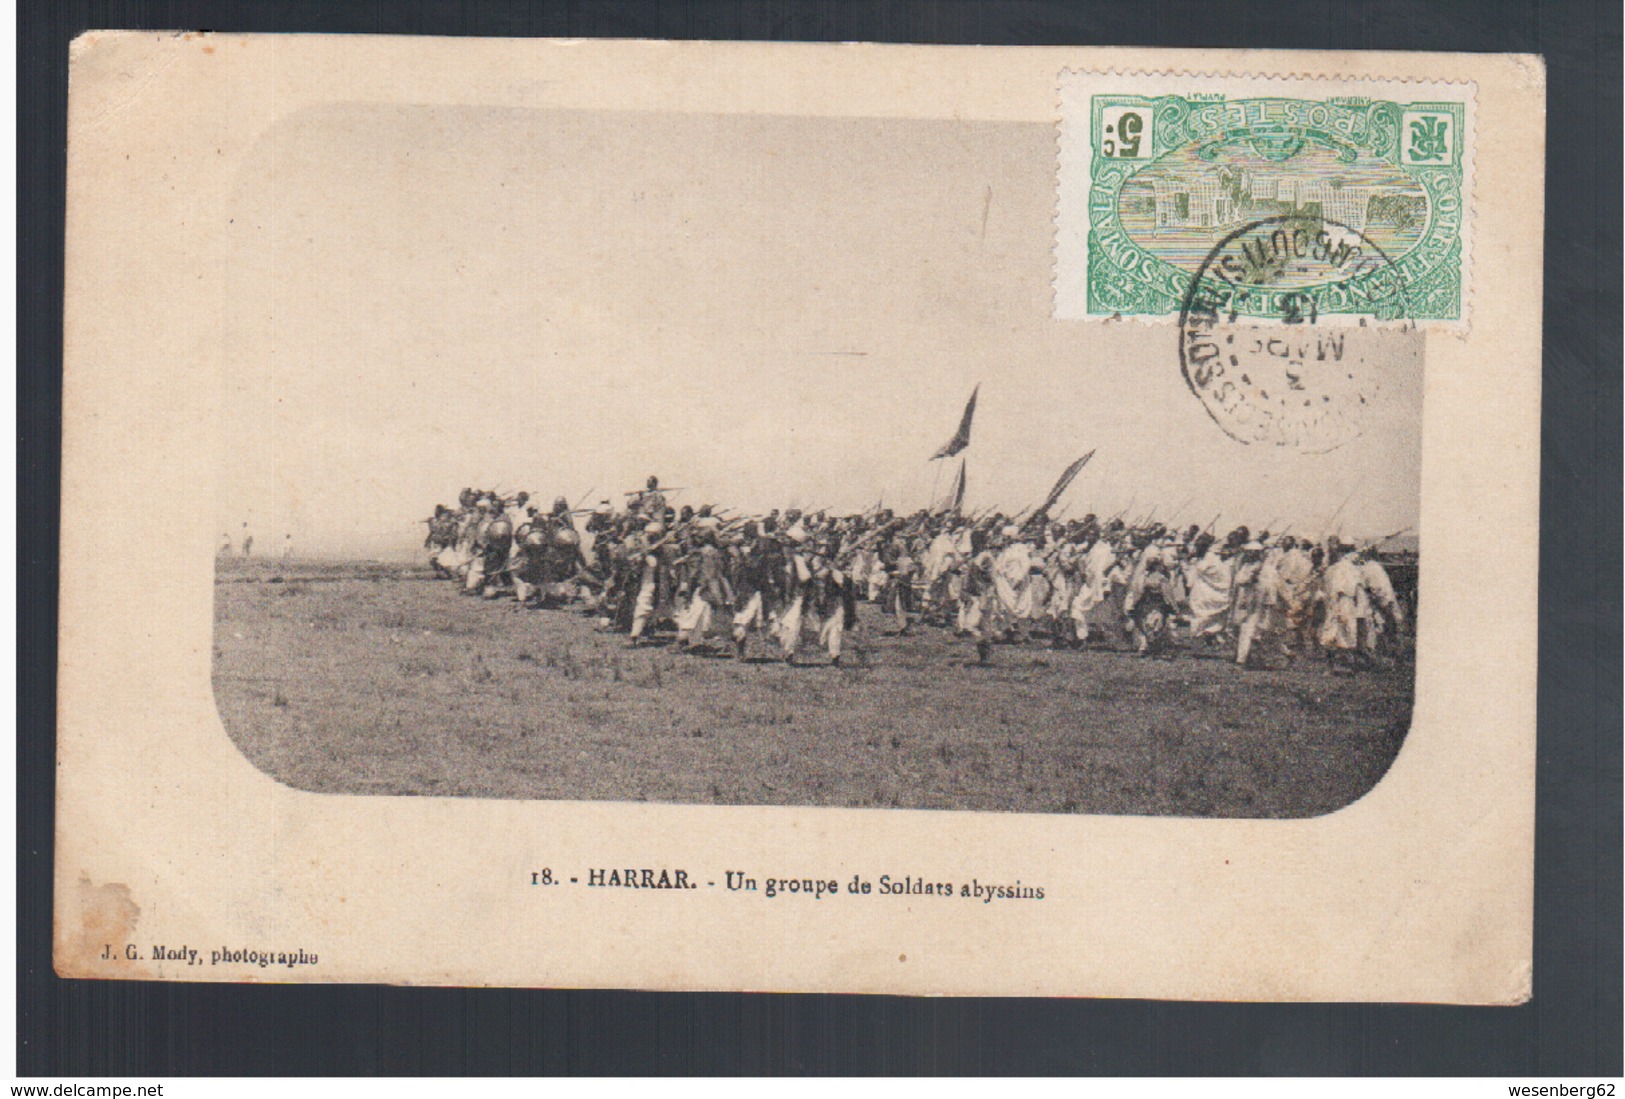 ETHIOPIE Harrar Un Groupe De Soldats Abyssins 1913 OLD  POSTCARD - Ethiopie